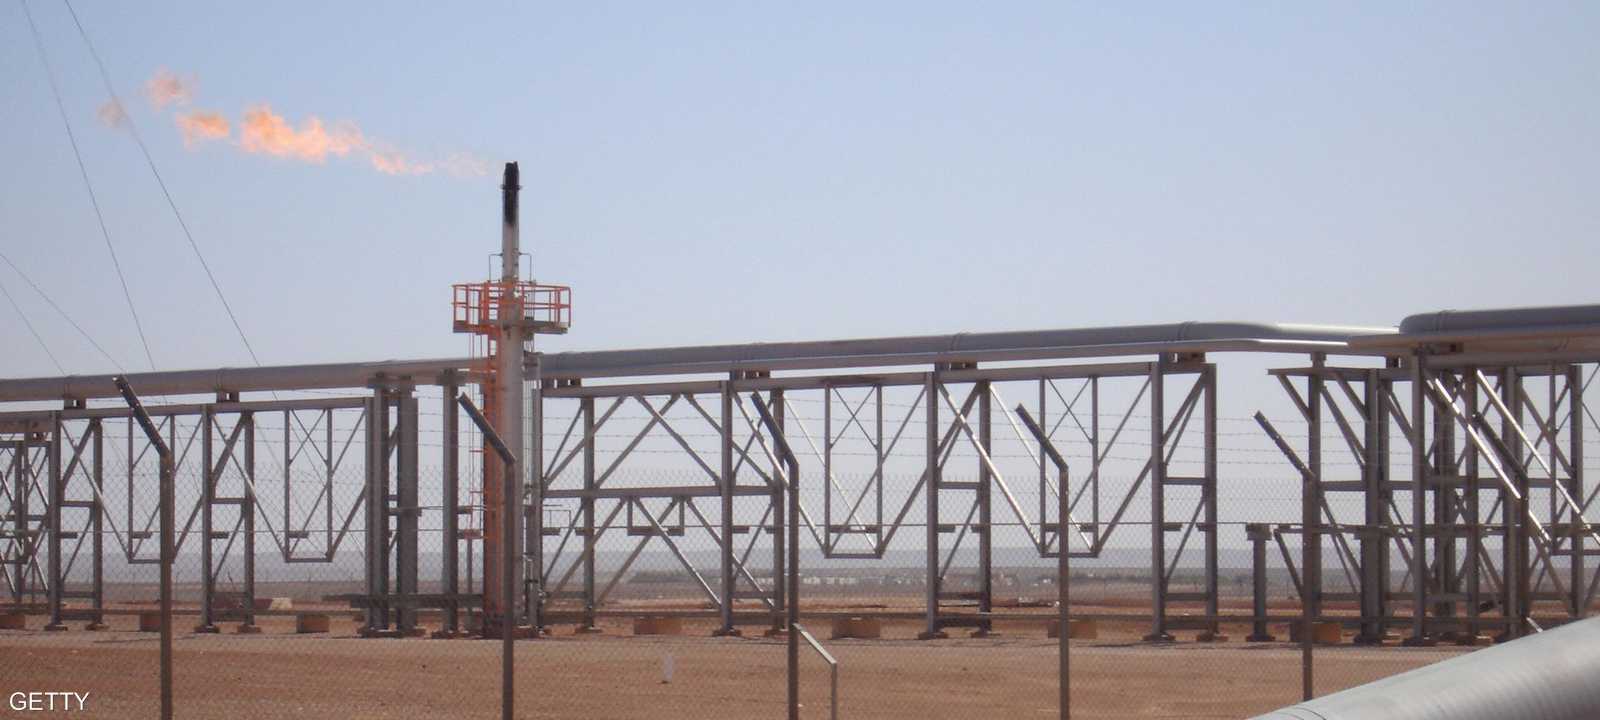 بلغ إجمالي إنتاج الجزائر من الغاز 135 مليار متر مكعب في 2018